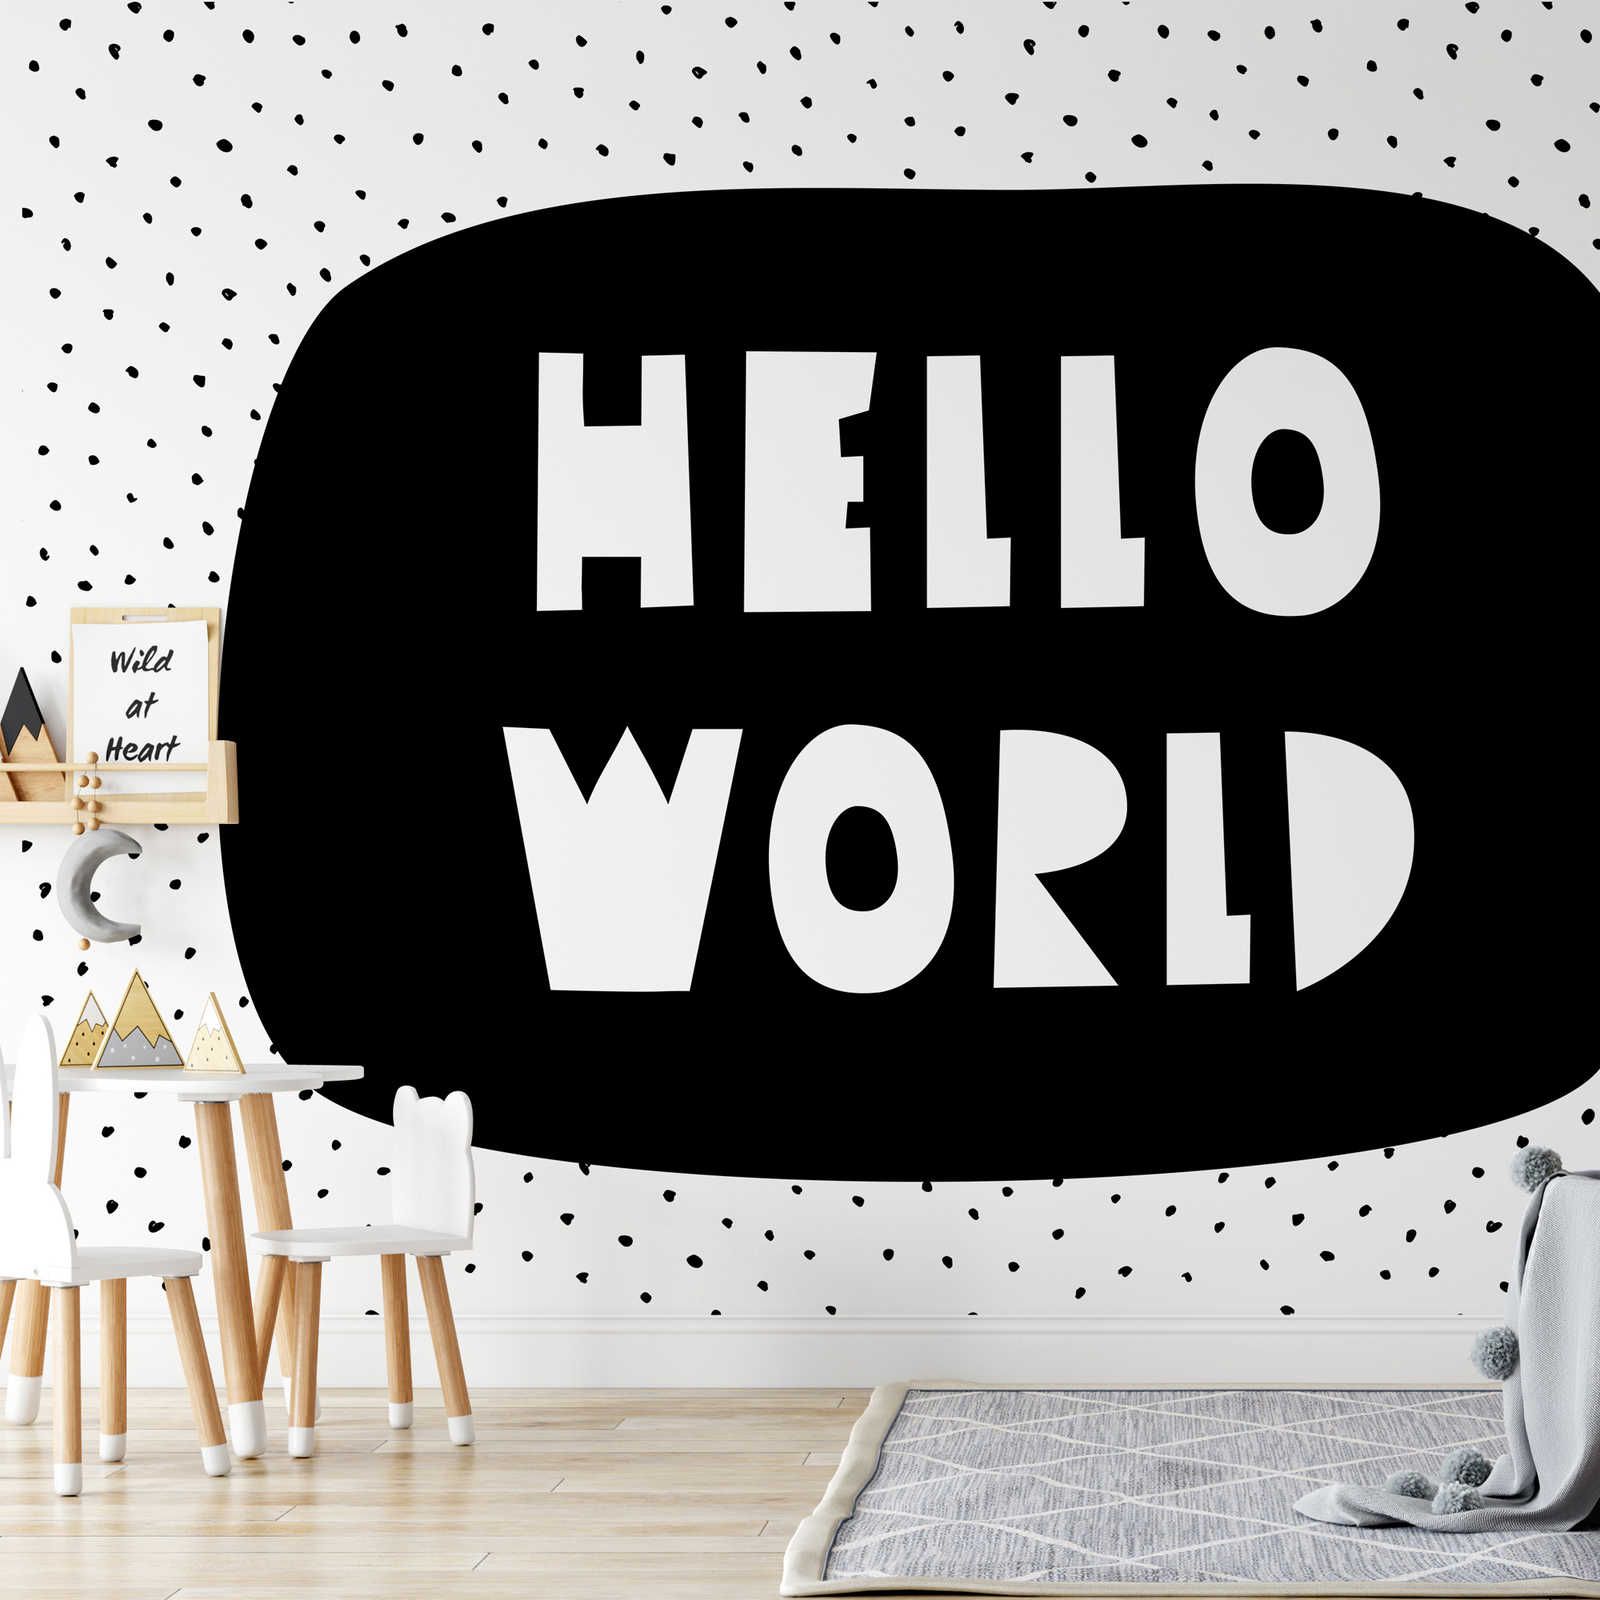 Fotomural para habitación infantil con letras "Hello World" - Material sin tejer liso y ligeramente brillante
